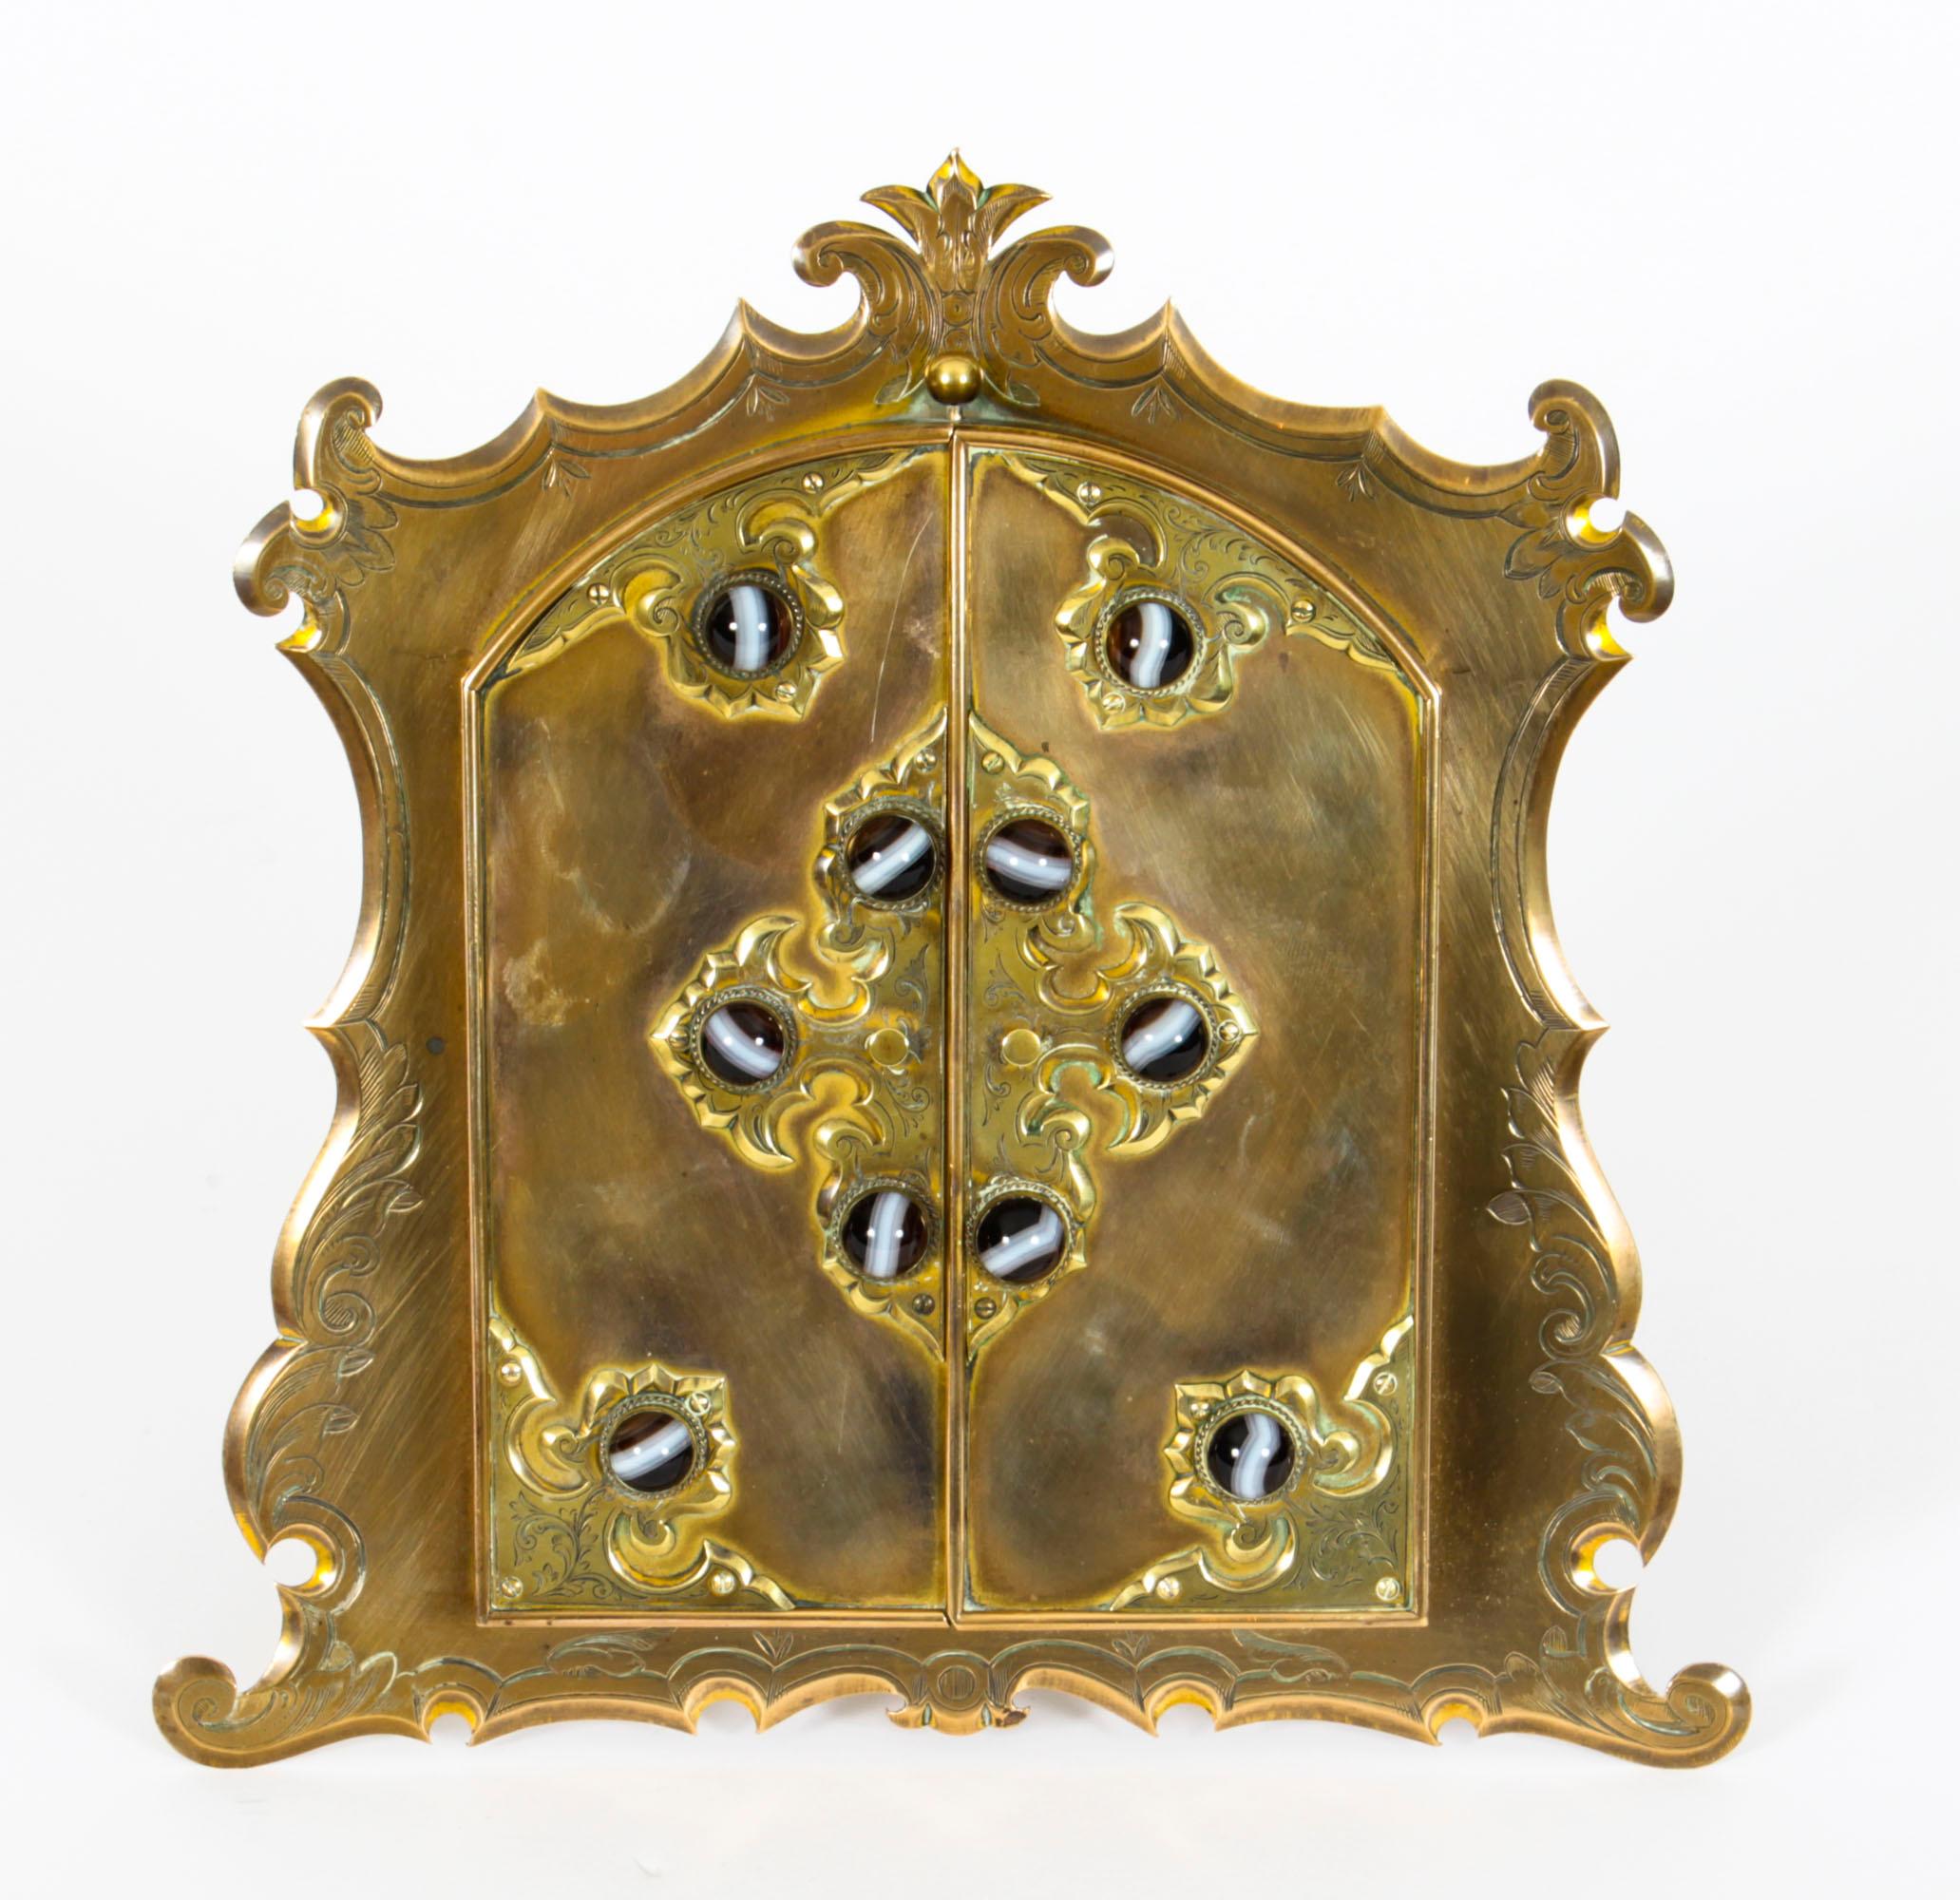 Il s'agit d'un magnifique cadre photographique de chevalet ancien monté en bronze doré et en agate, datant d'environ 1880.
 
La plaque arrière arquée présente une bordure ondulée avec une paire de portes arquées à ressort renfermant cinq ovales